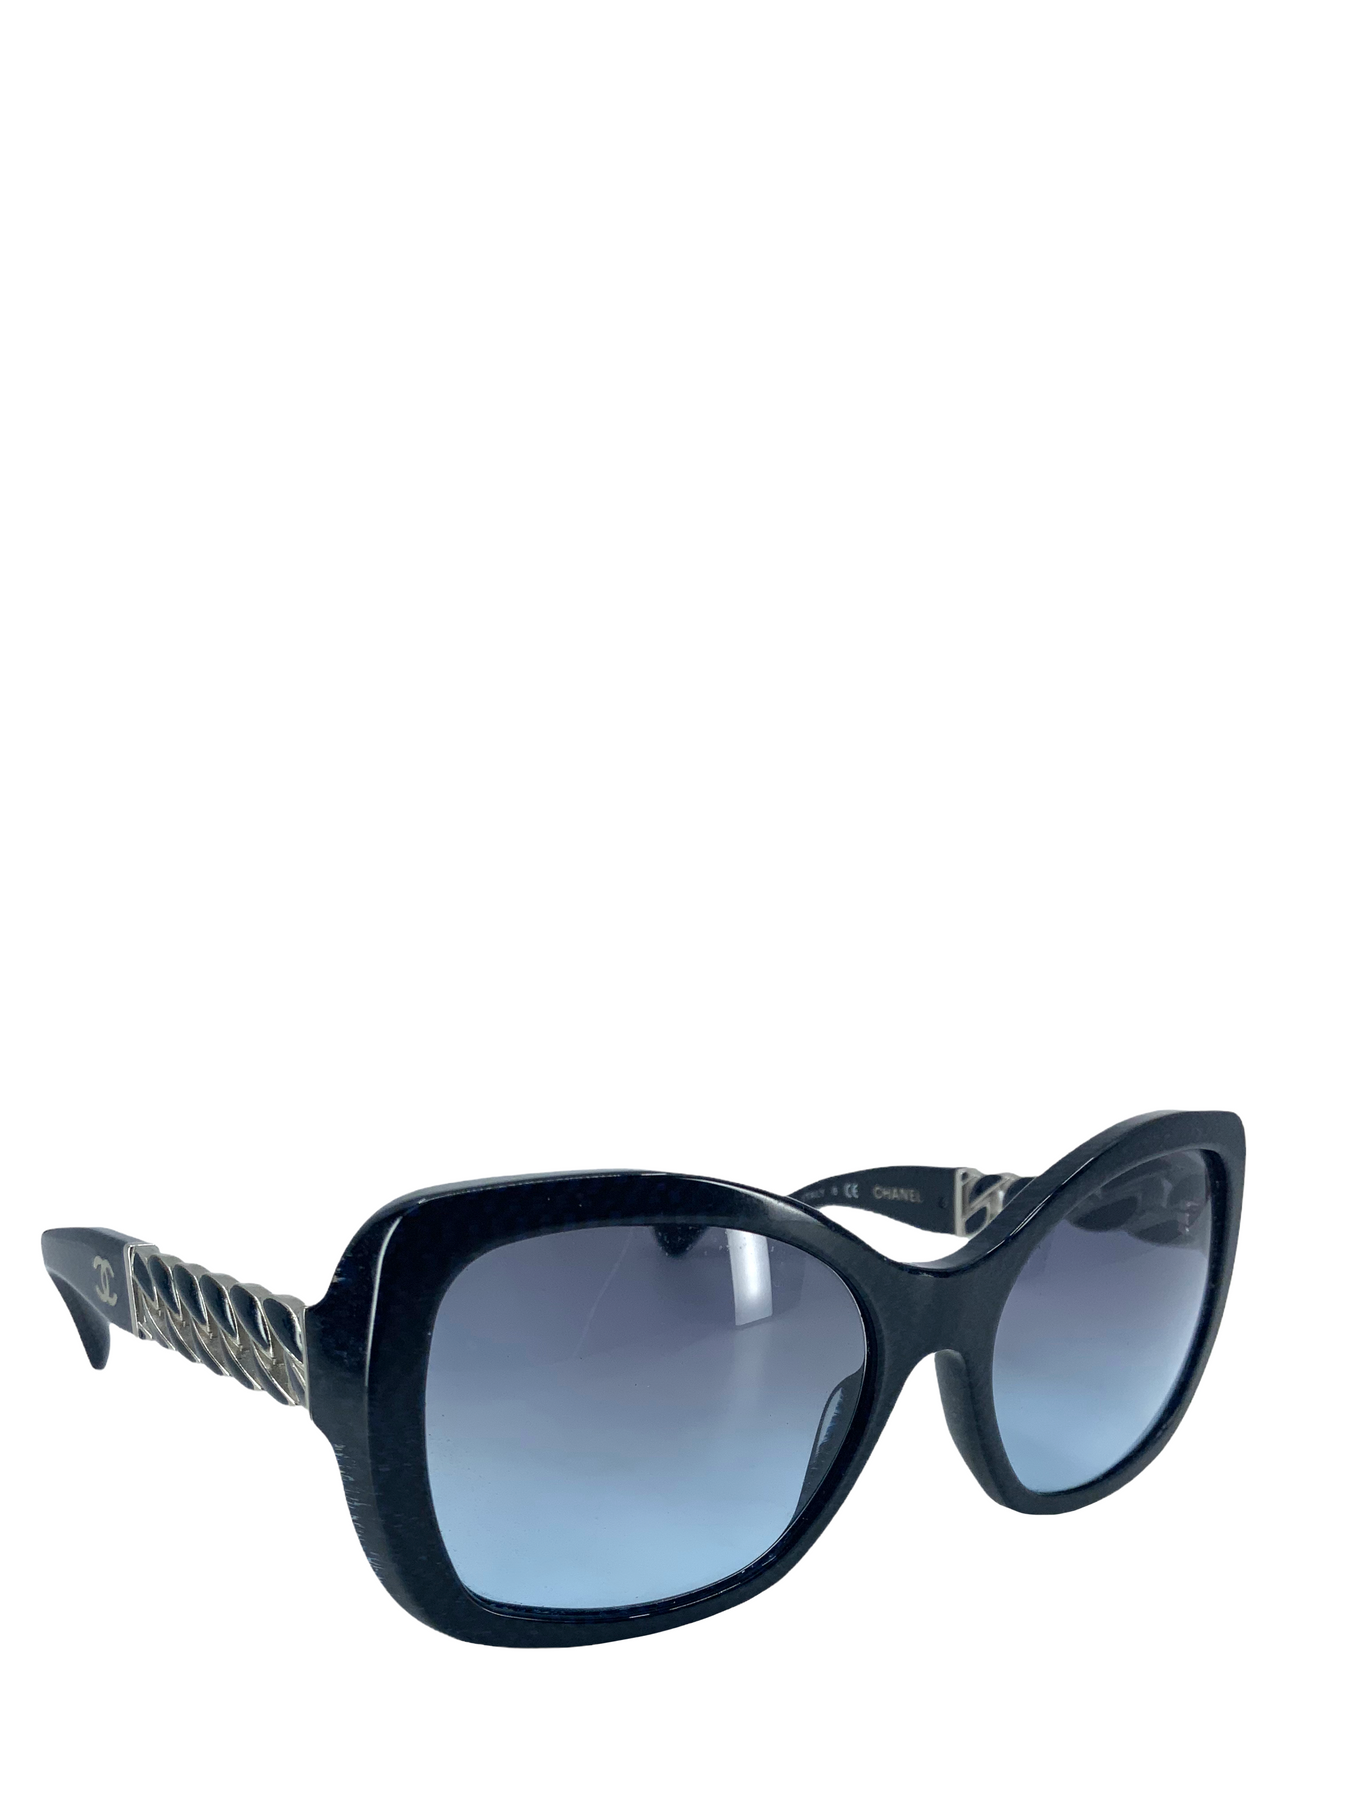 Chanel Chain link sunglasses  Unique Designer Pieces